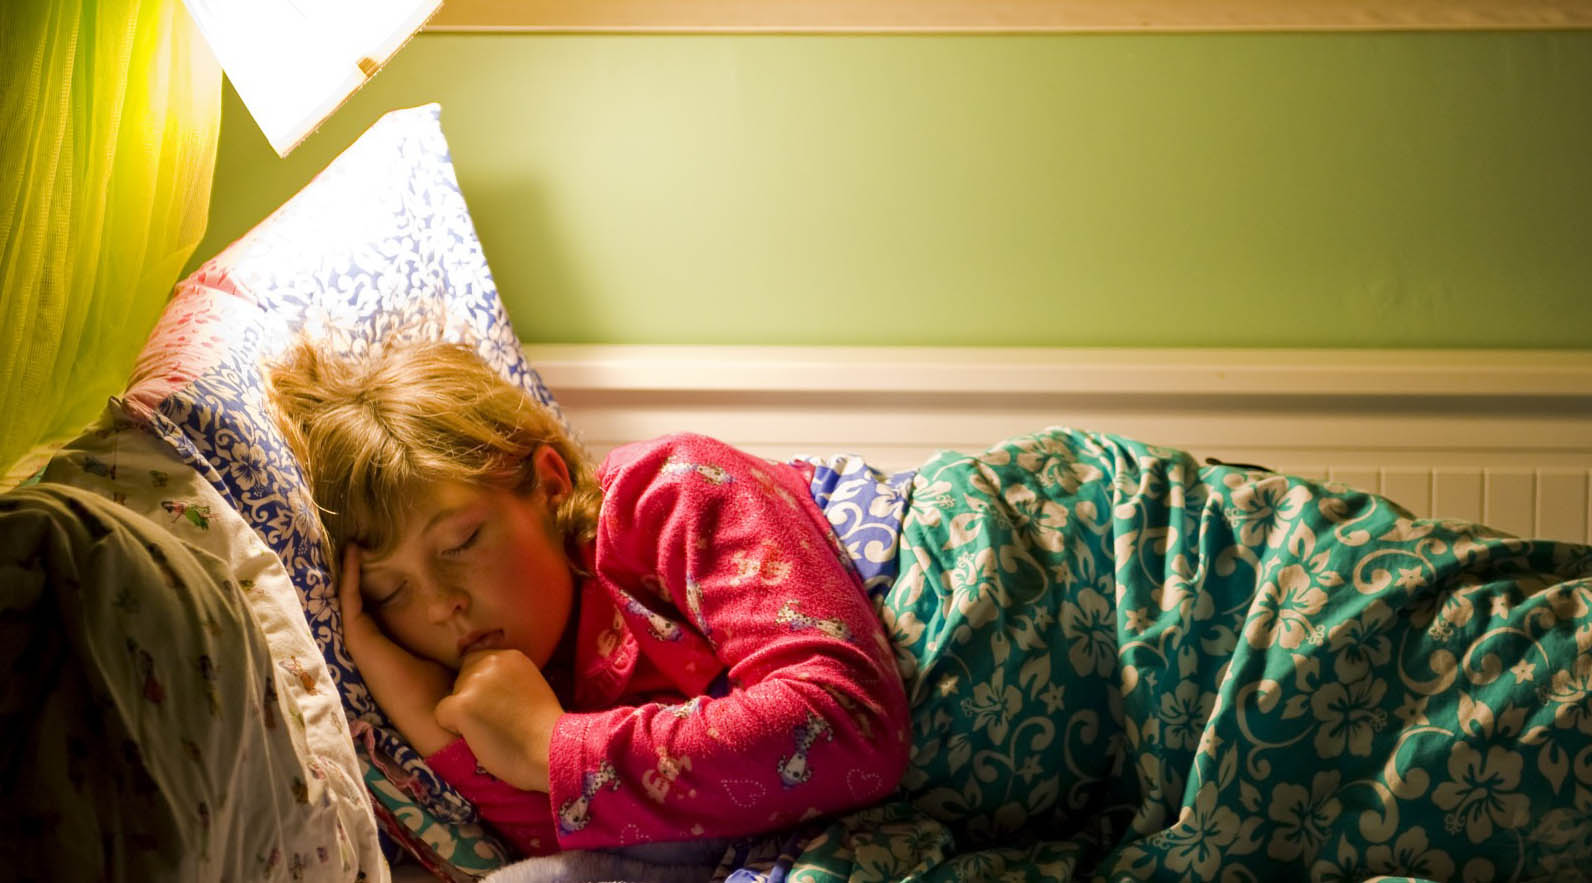 El Sumario - Un estudio reveló que la mejor manera de reponer las energías agotadas durante el día es irse a la cama con la luz apagada